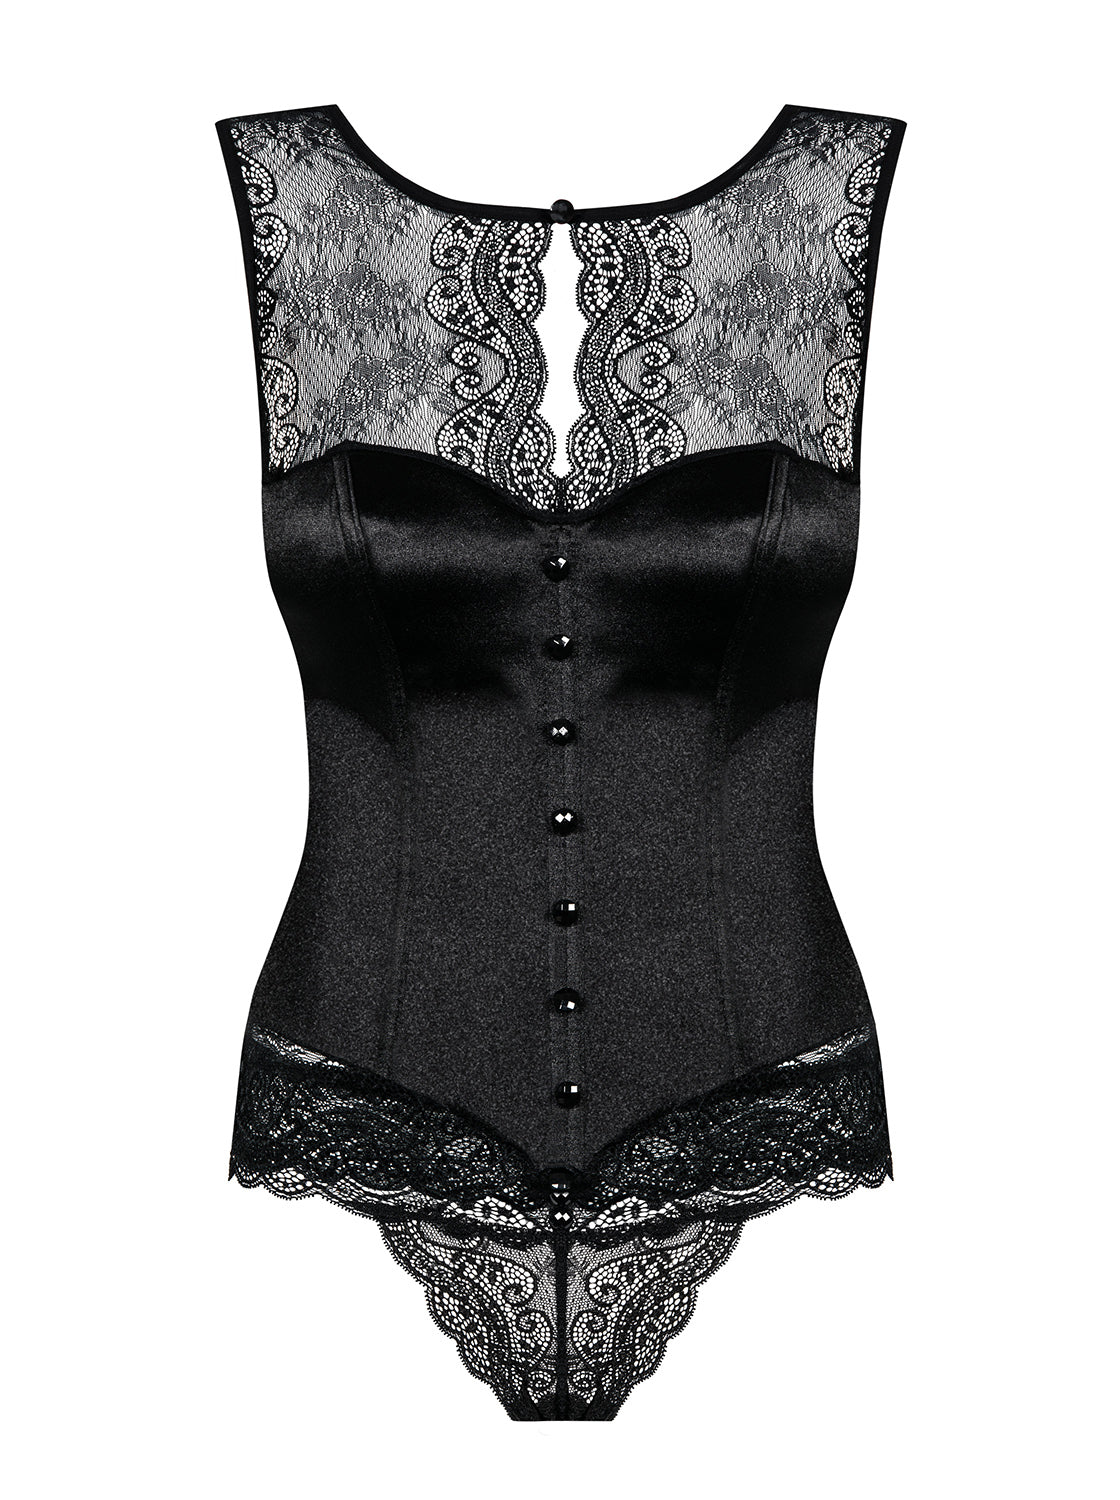 http://viviannesboutique.com/cdn/shop/products/Obsessive_miamor_corset_95ec773f-cd6d-45a7-981c-3e7b7f1014f3.jpg?v=1541372114